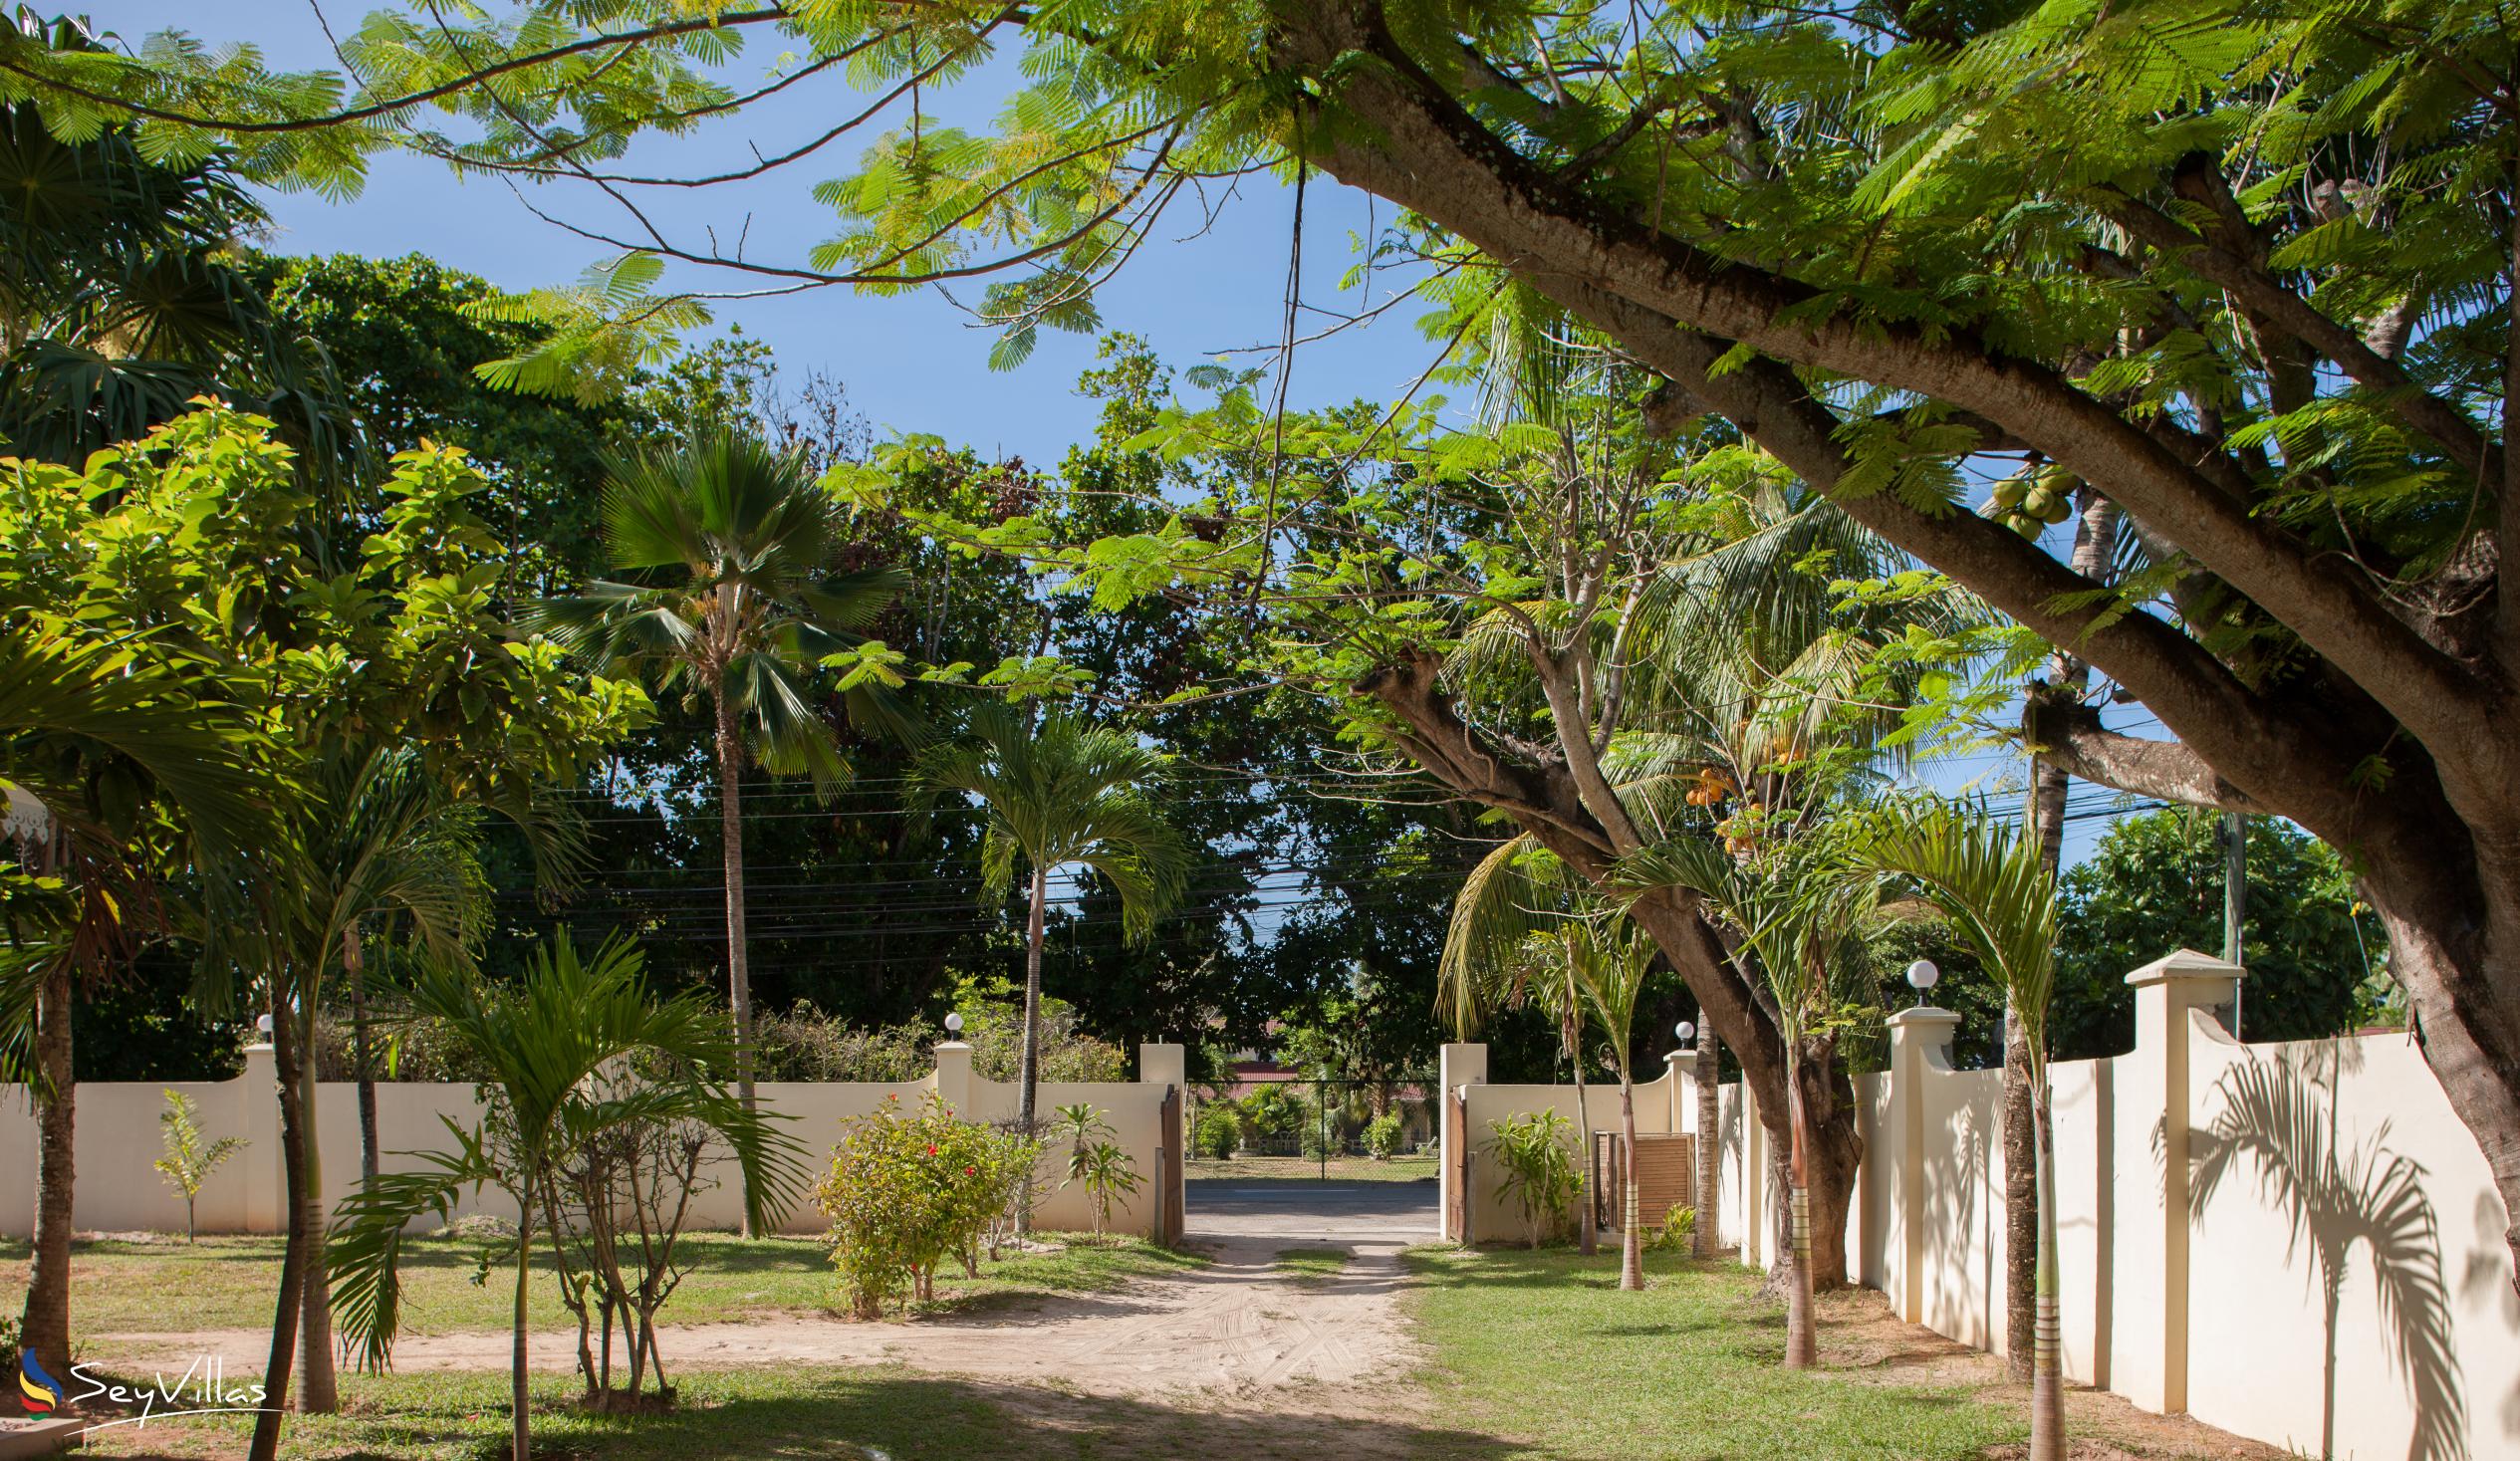 Foto 48: Villa Confort - Aussenbereich - Praslin (Seychellen)